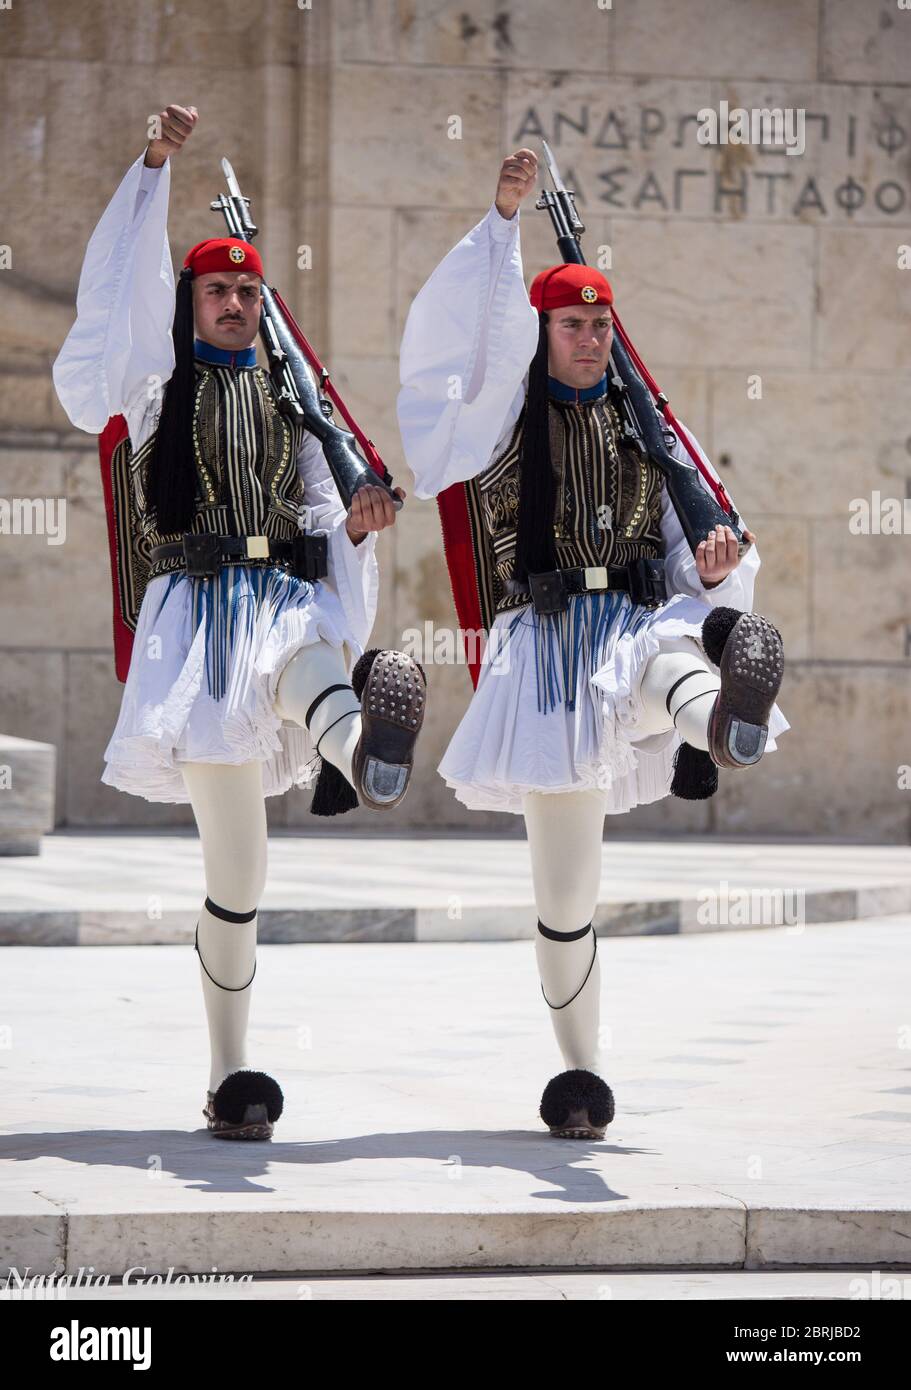 Atene, Grecia - 01 maggio 2019: Soldati greci Evzones vestiti in uniformi insolite tradizionali, si riferisce ai membri della Guardia Presidenziale, un eli Foto Stock